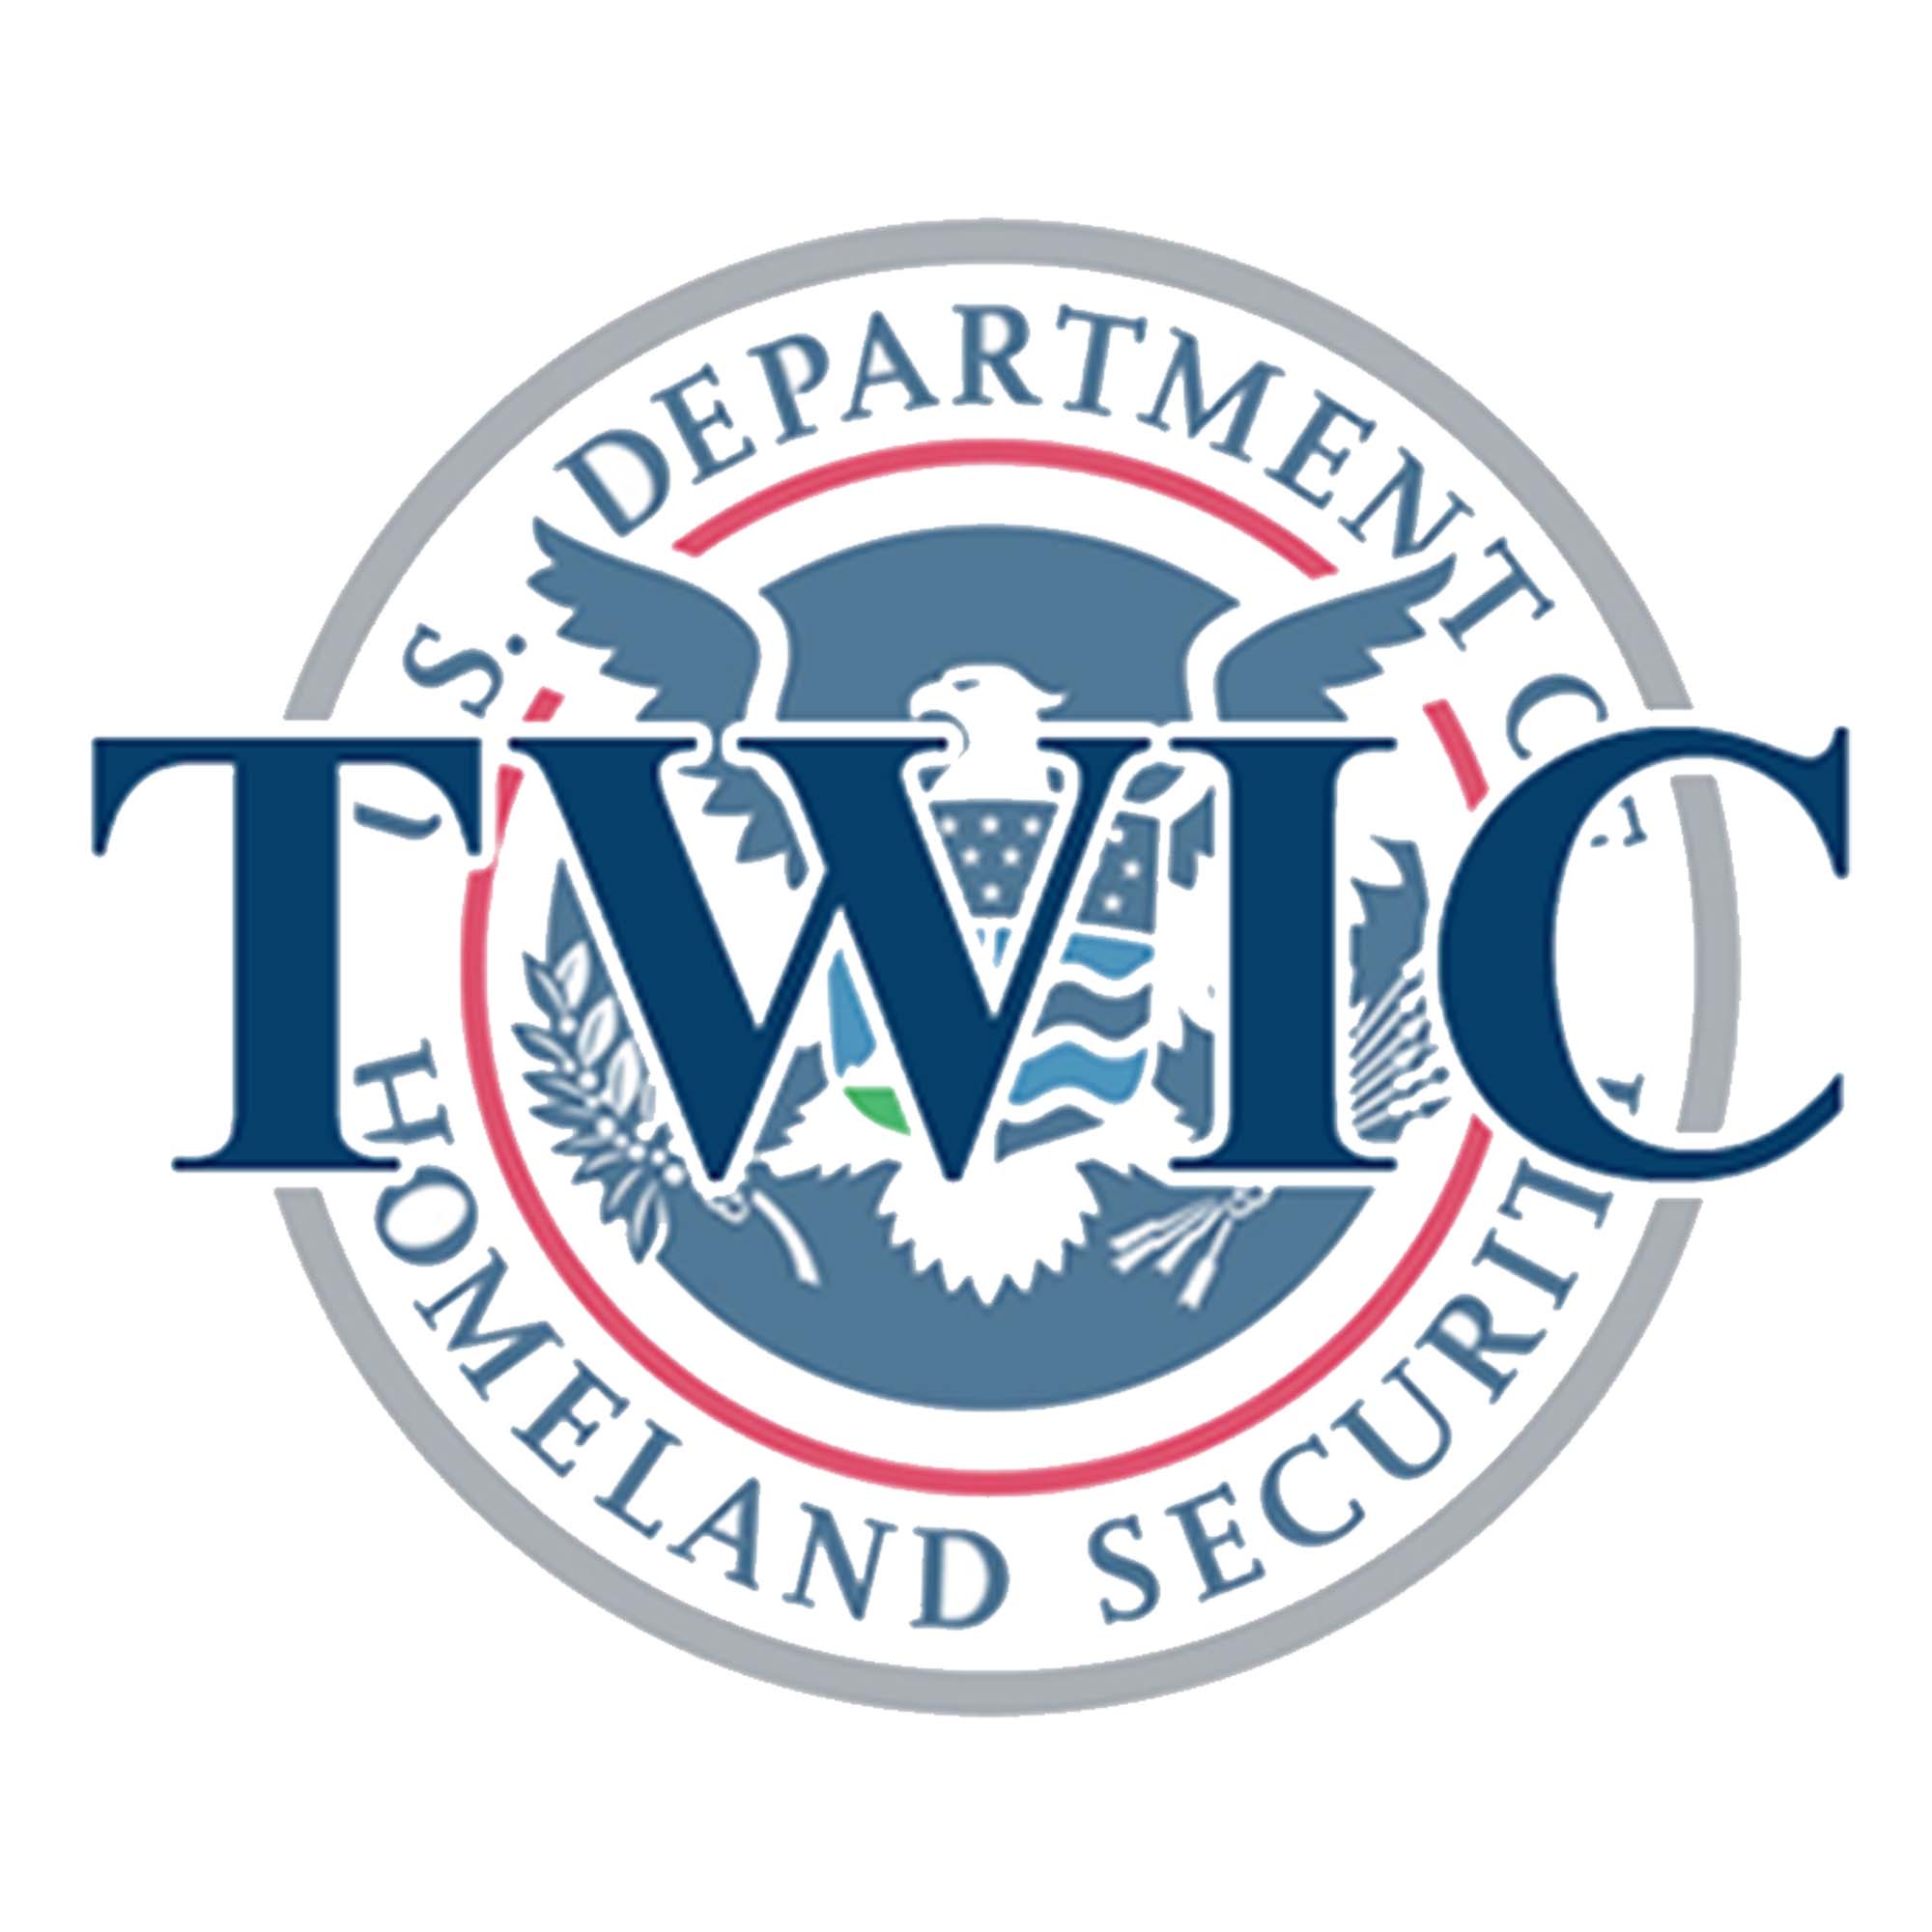 TWC Logo